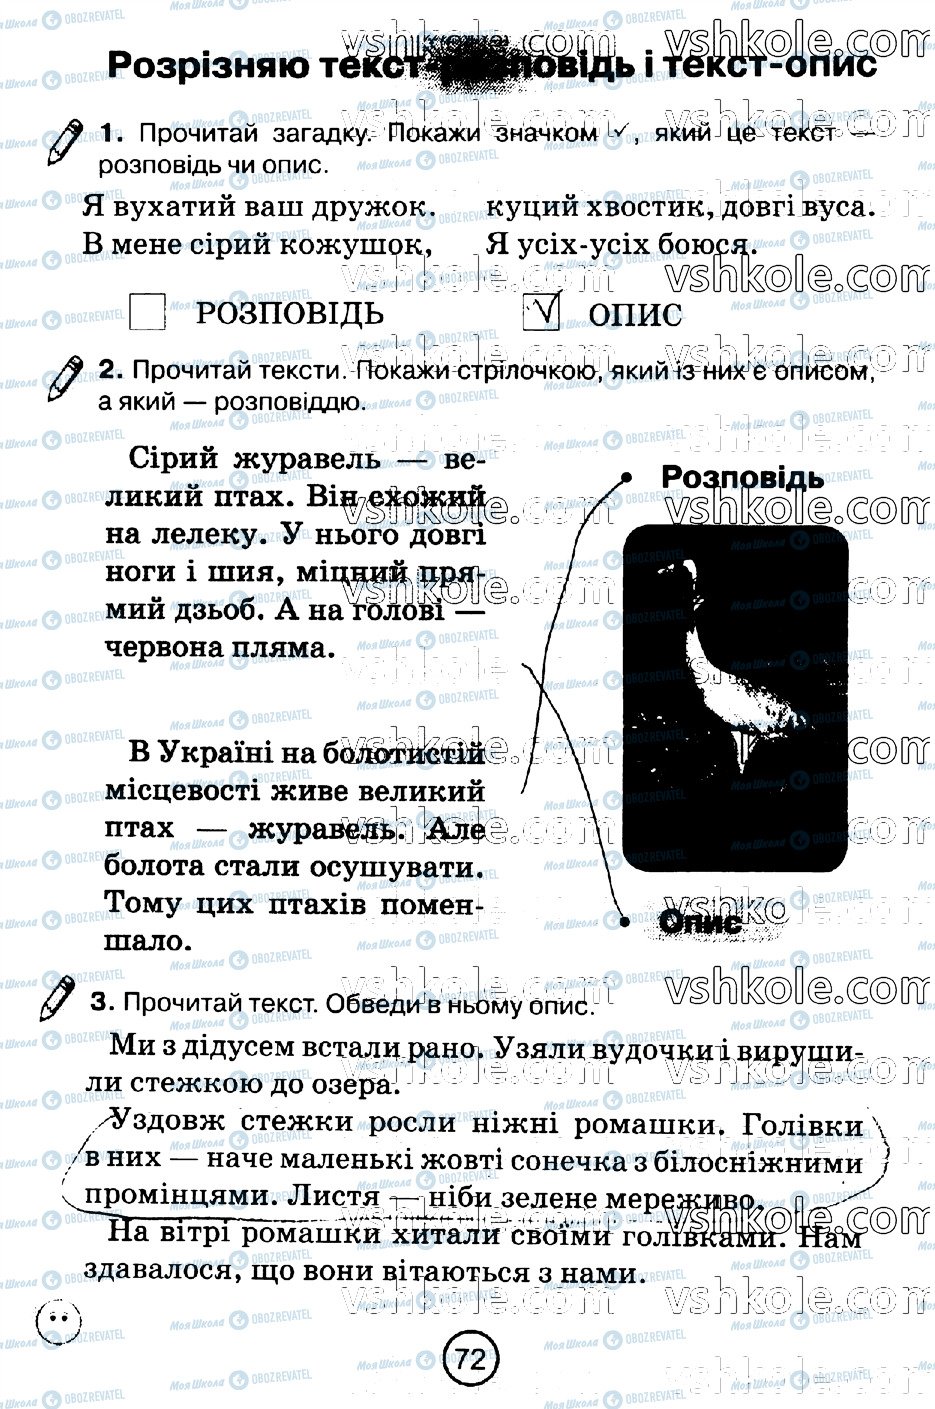 ГДЗ Укр мова 2 класс страница стр72